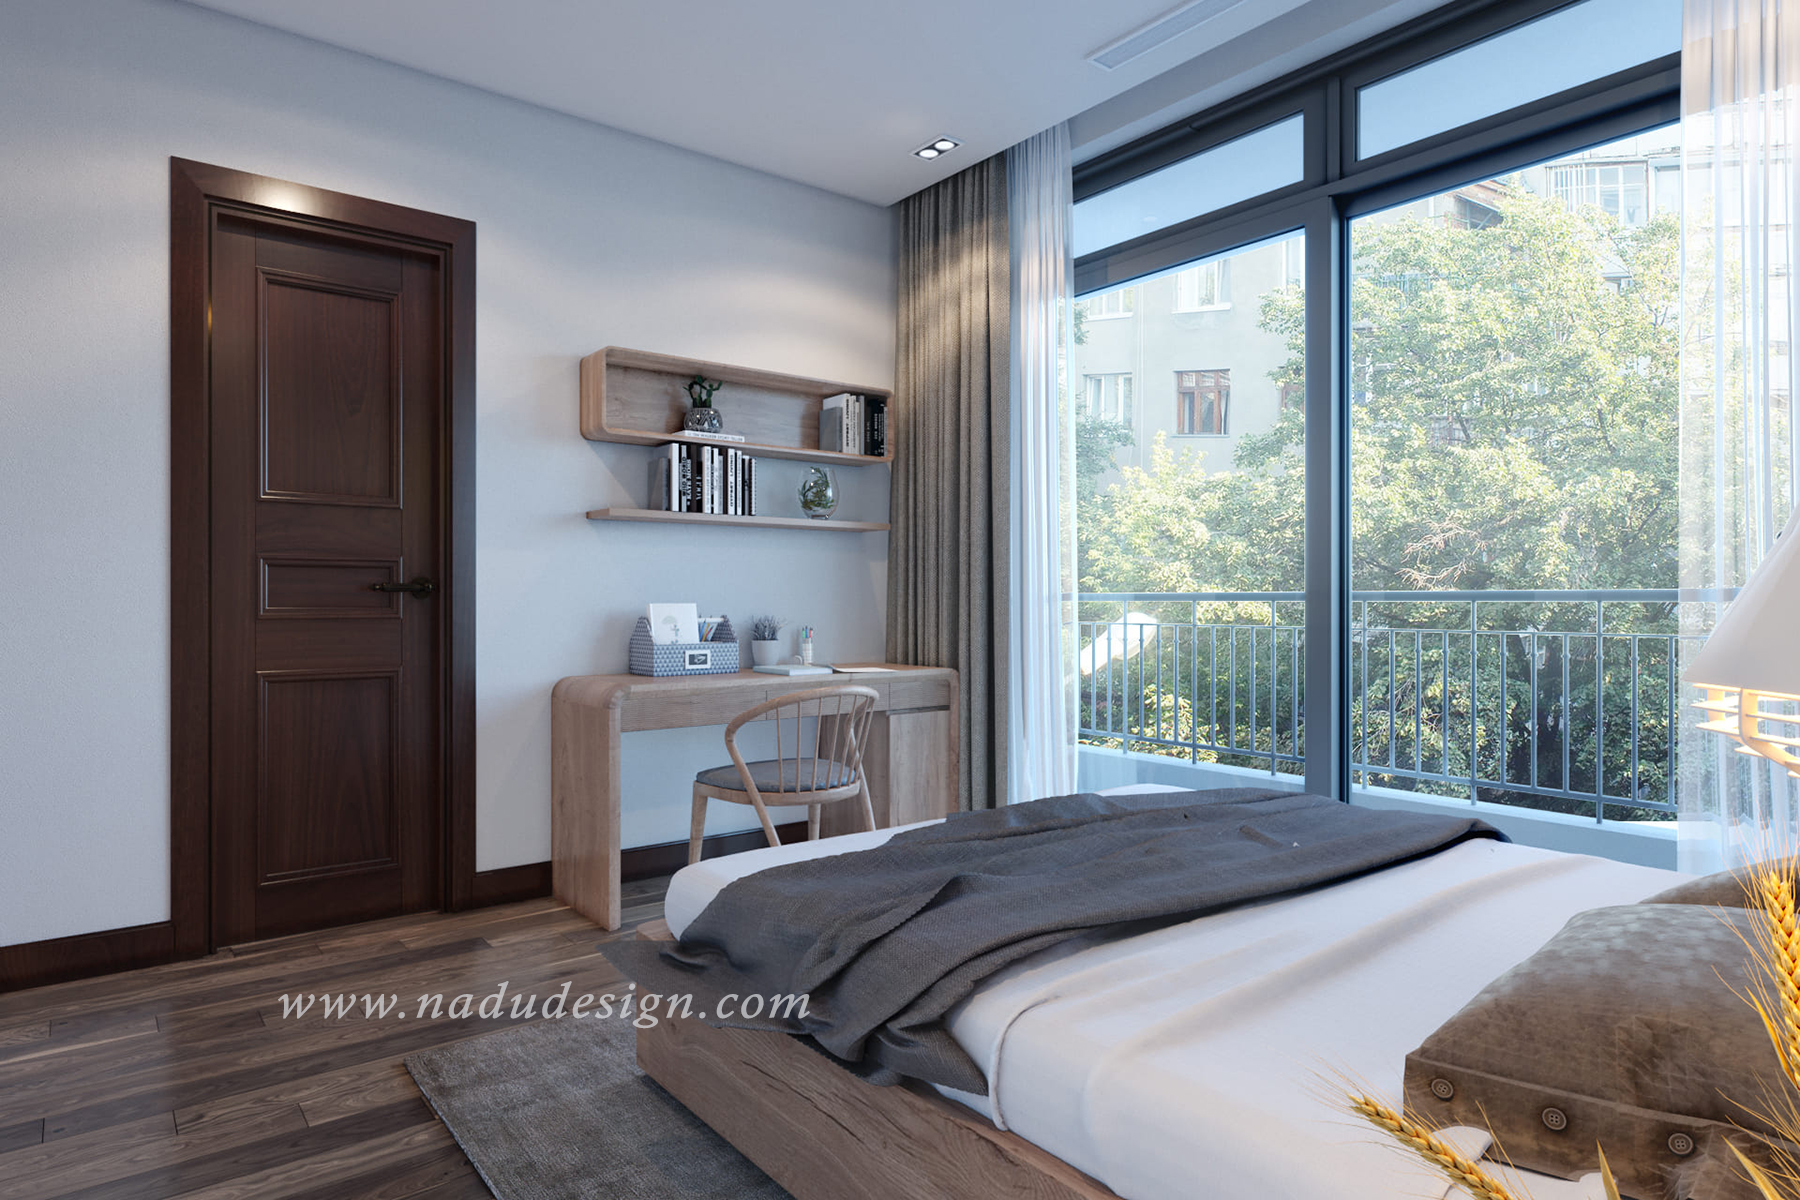 Đừng bỏ lỡ những thiết kế mới nhất cho phòng ngủ 20m2 tiện nghi của chúng tôi! Chúng tôi đưa ra những giải pháp tối ưu về cảm giác thoải mái và tiện nghi cho căn phòng của bạn. Làm mới không gian của bạn để cảm nhận sự thoải mái và tiện nghi nhất có thể.